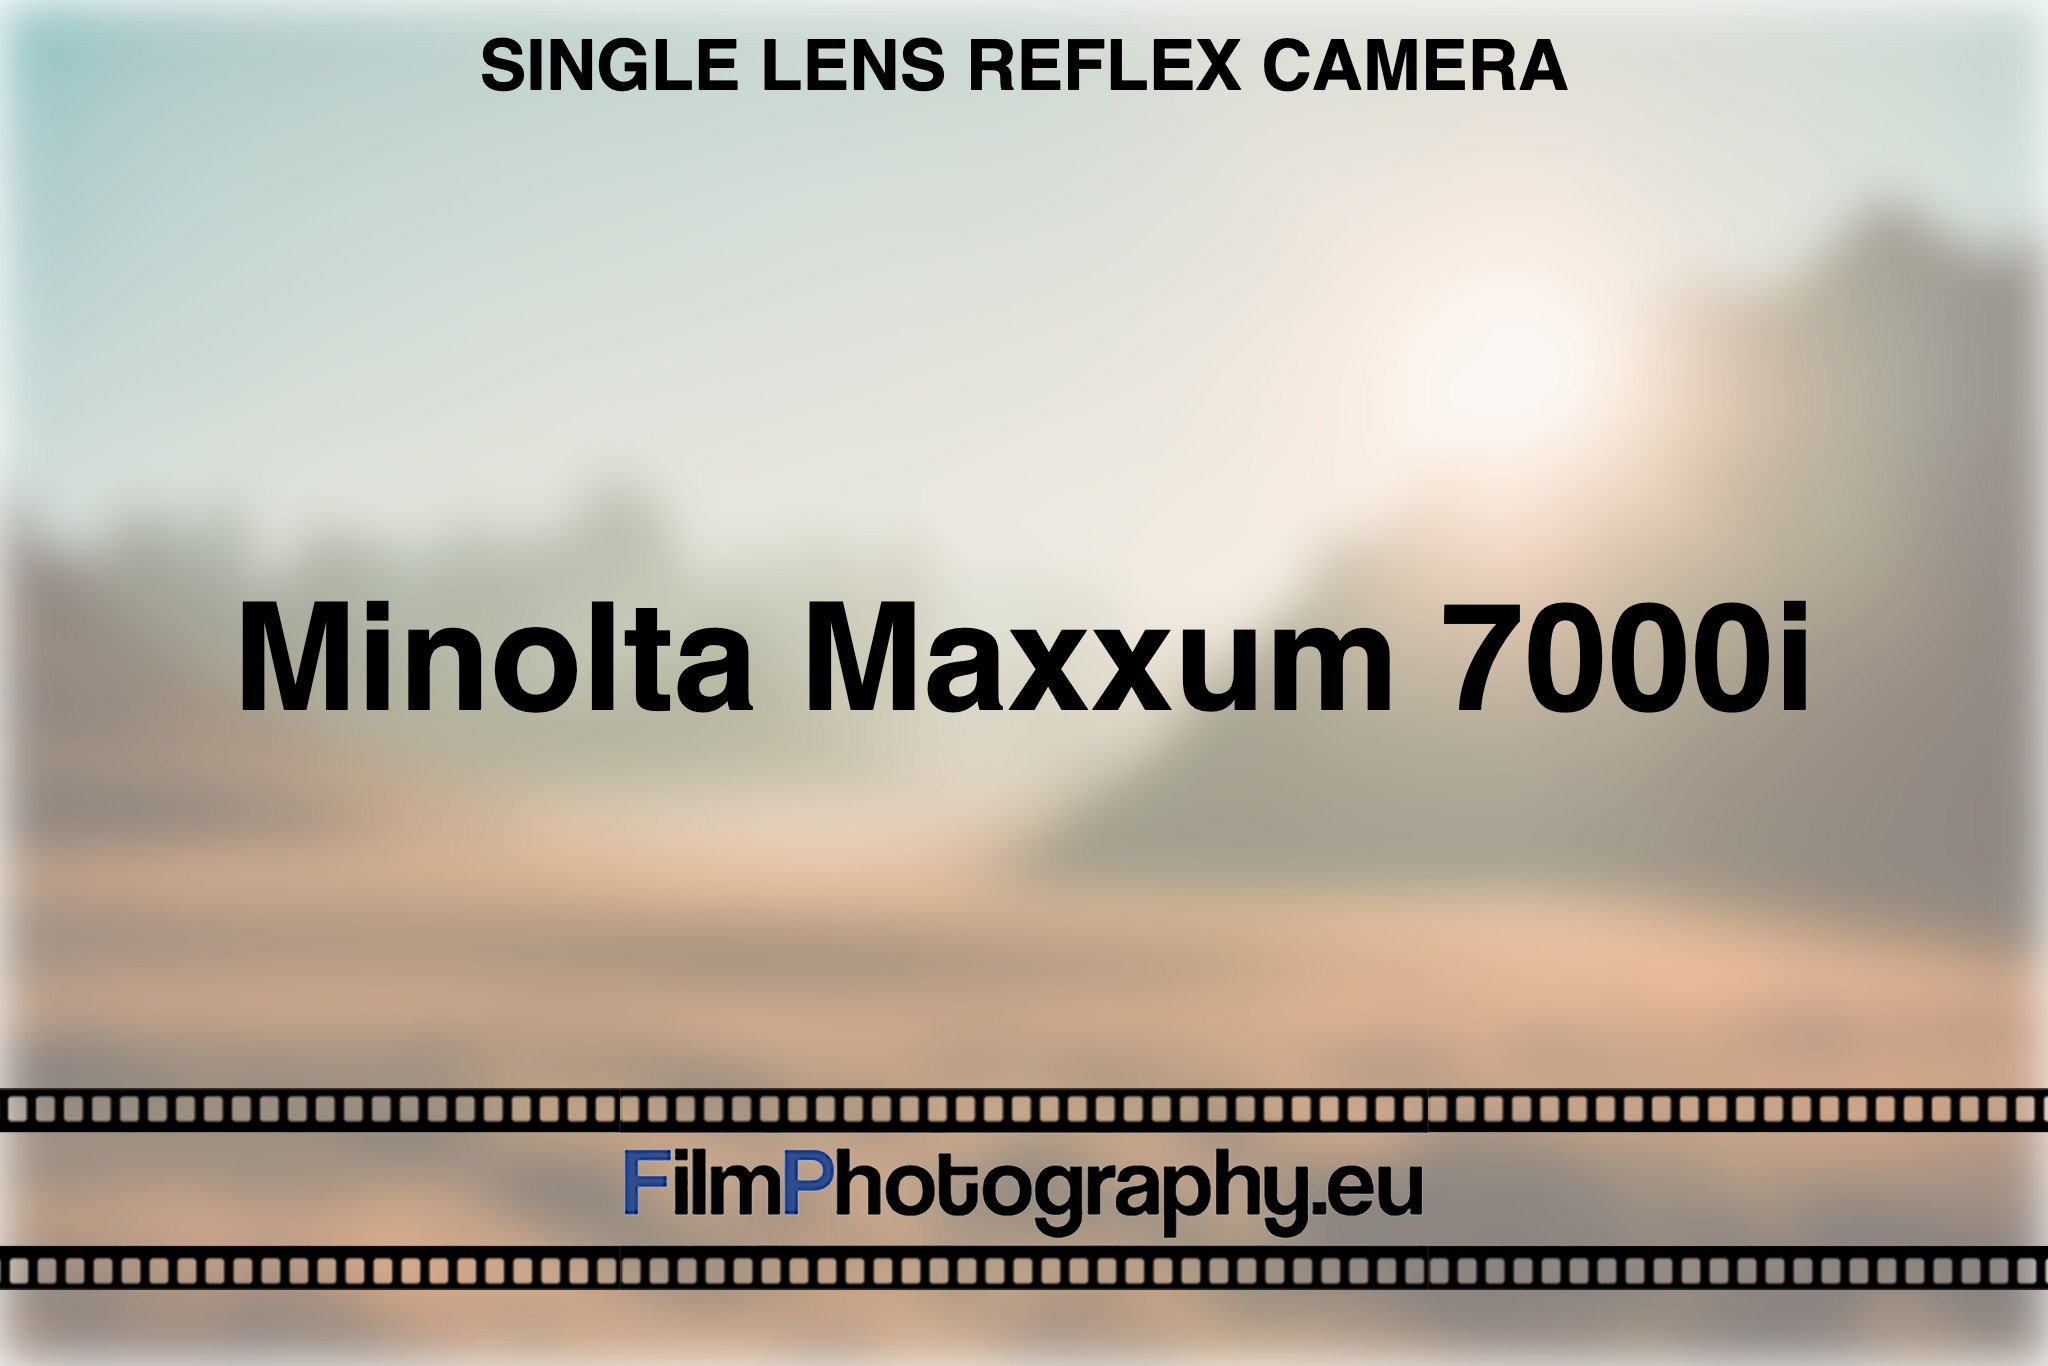 minolta-maxxum-7000i-single-lens-reflex-camera-bnv